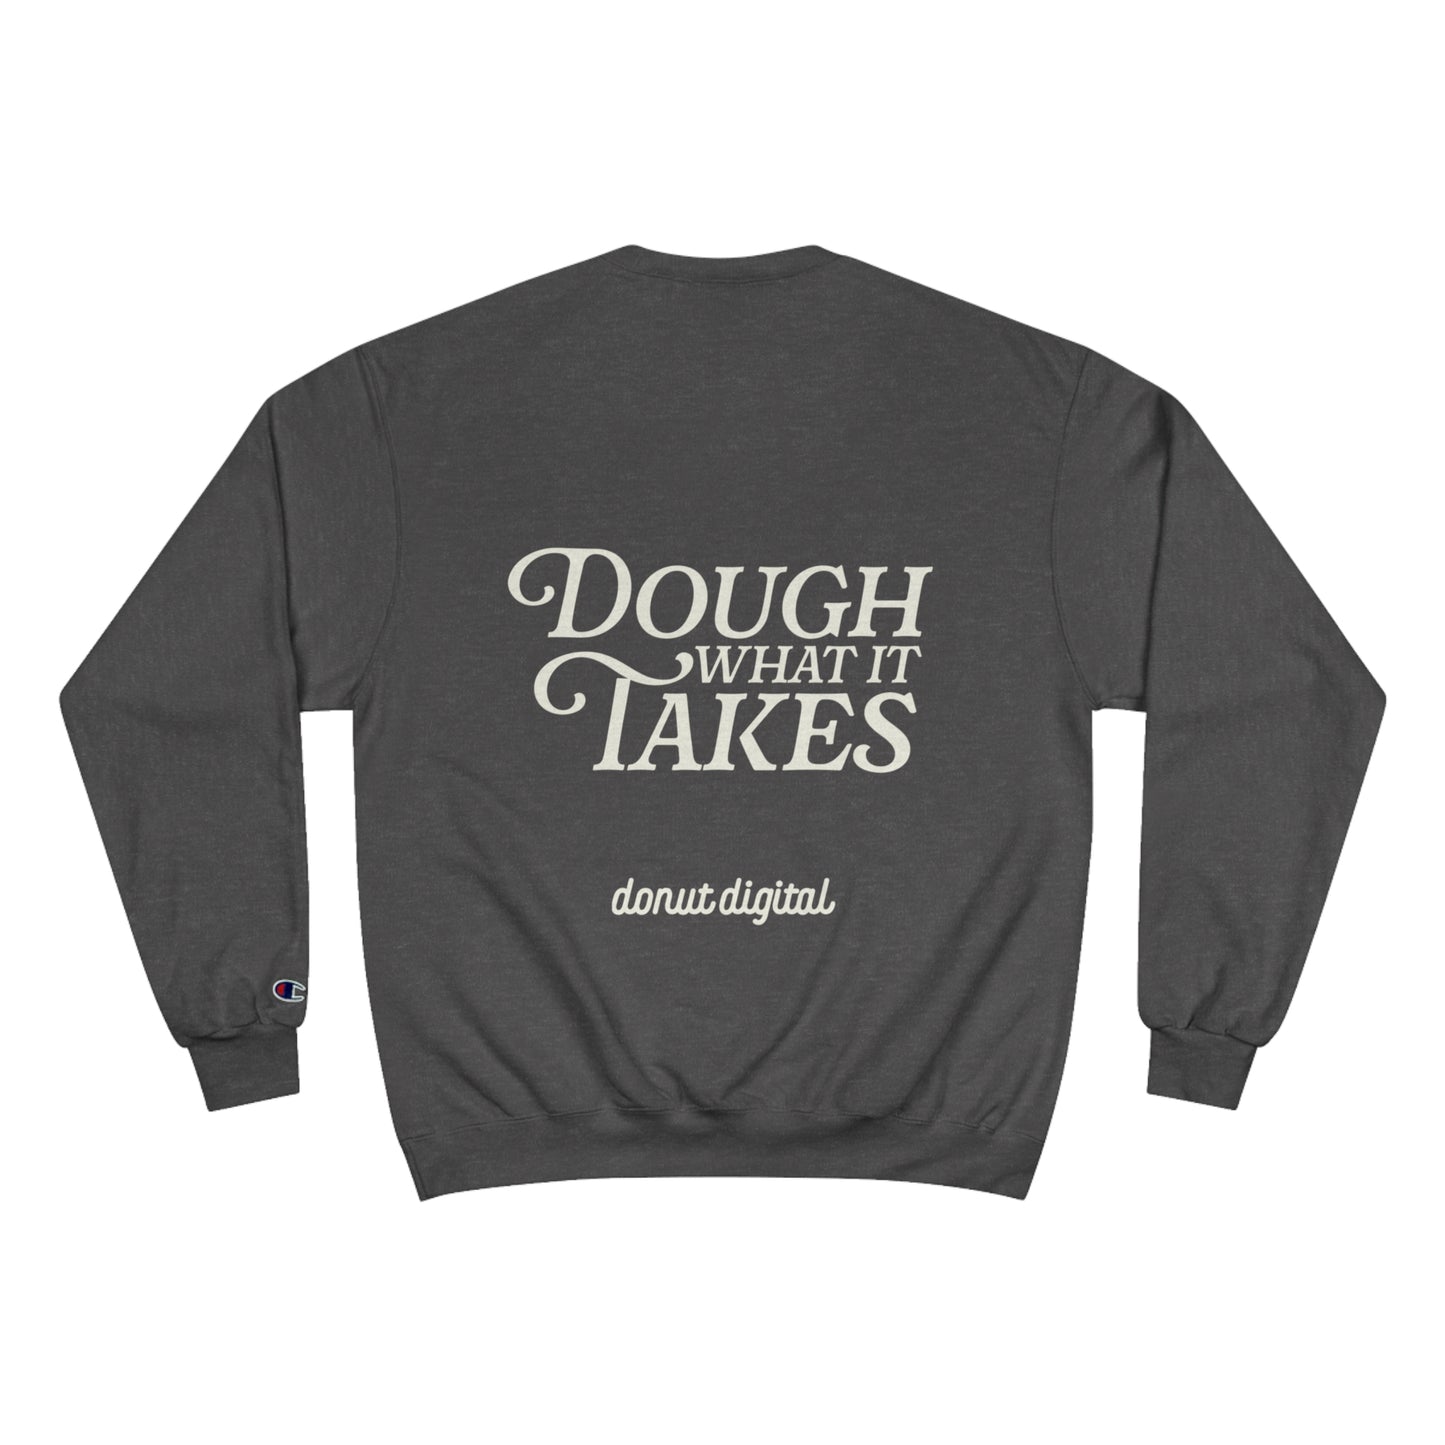 "Dough What It Takes" Champion Sweatshirt